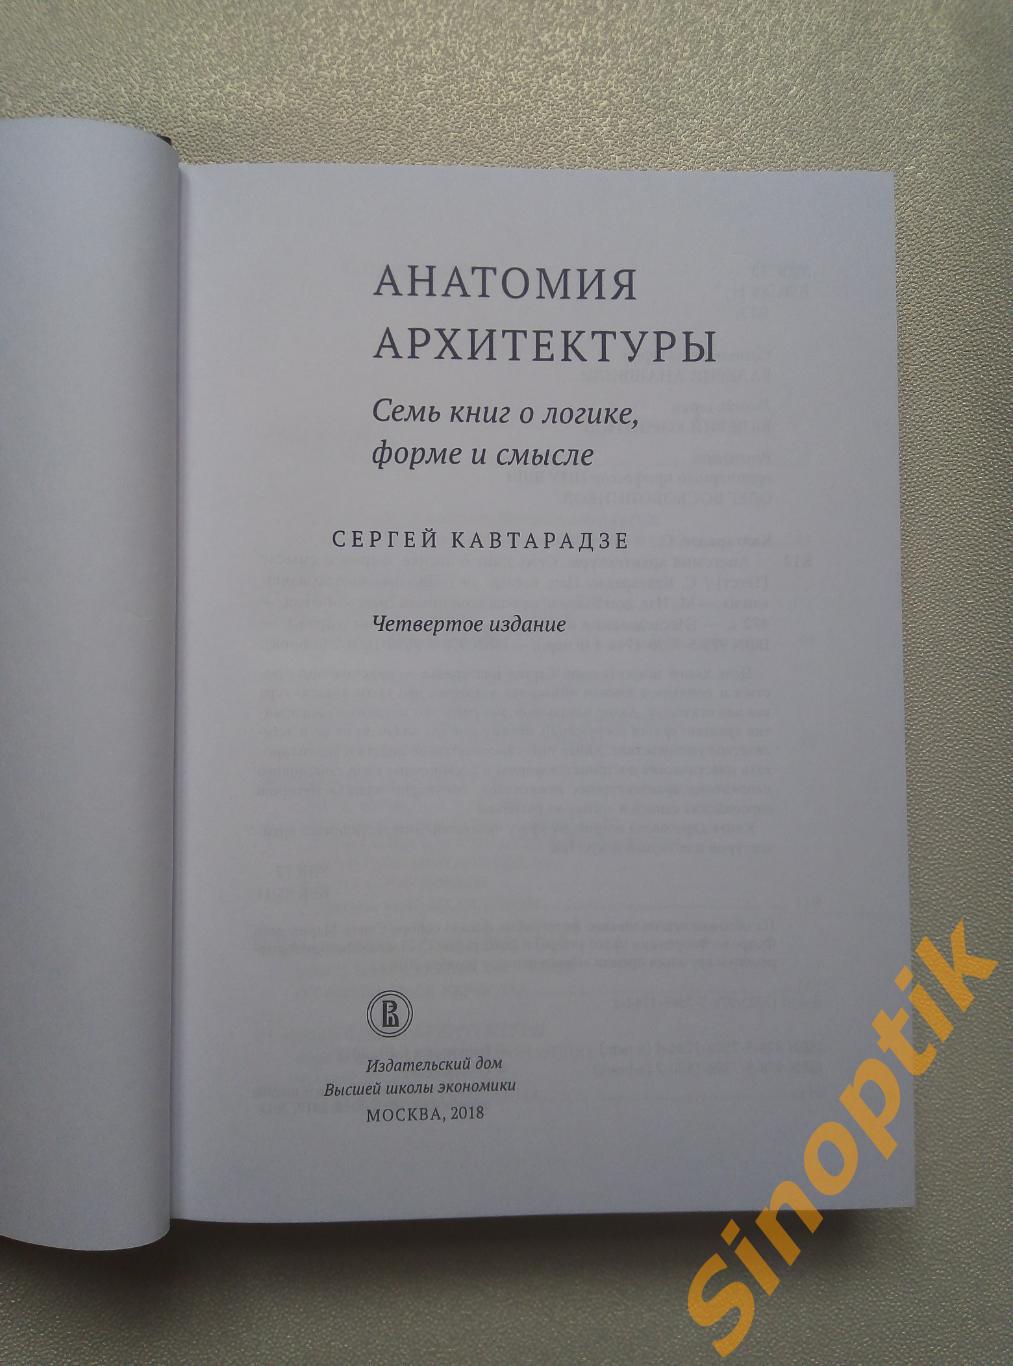 Сергей Кавтарадзе, Анатомия архитектуры. Семь книг о логике, форме и смысле 2